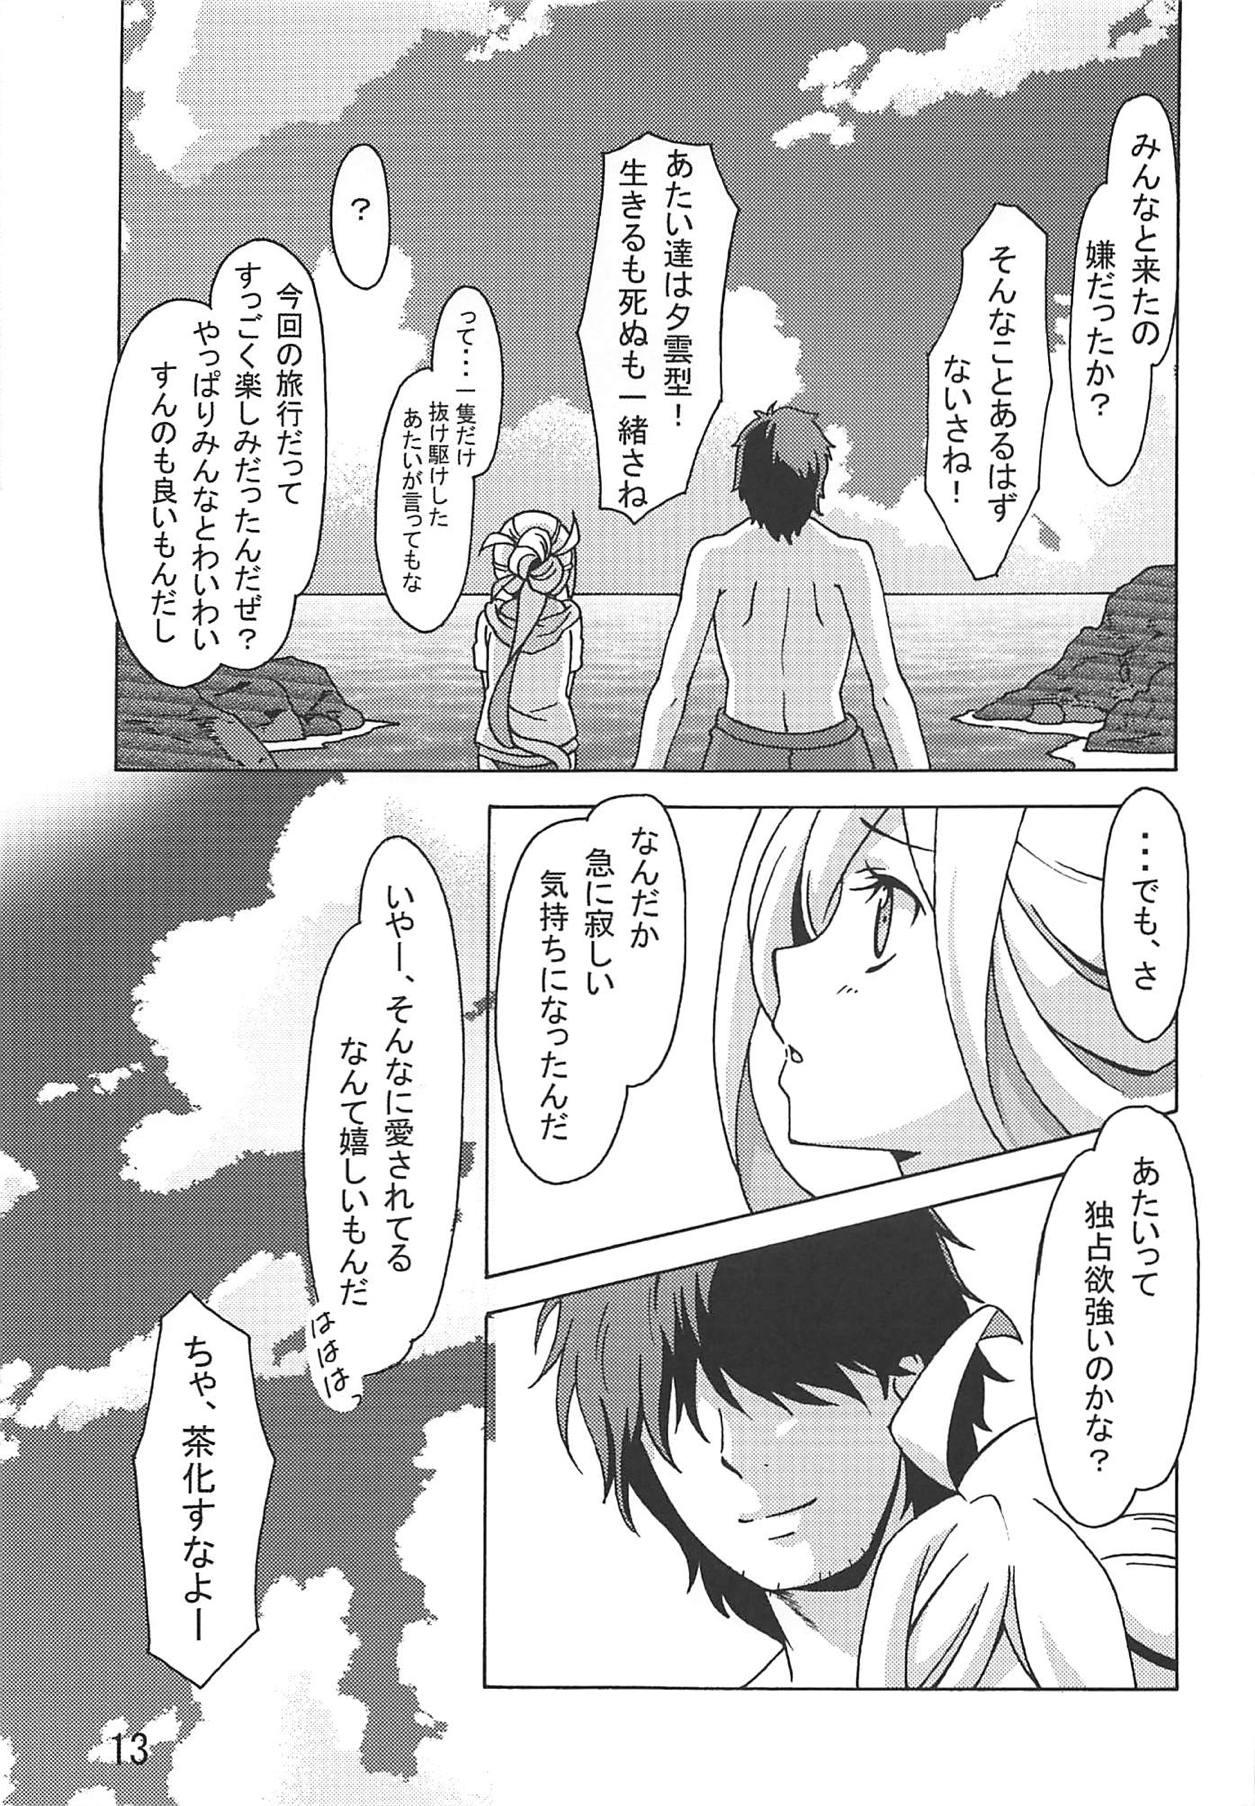 Piercing Asashimo no Shinkon Ryokou e Ikukkyanai ne! - Kantai collection Chubby - Page 12